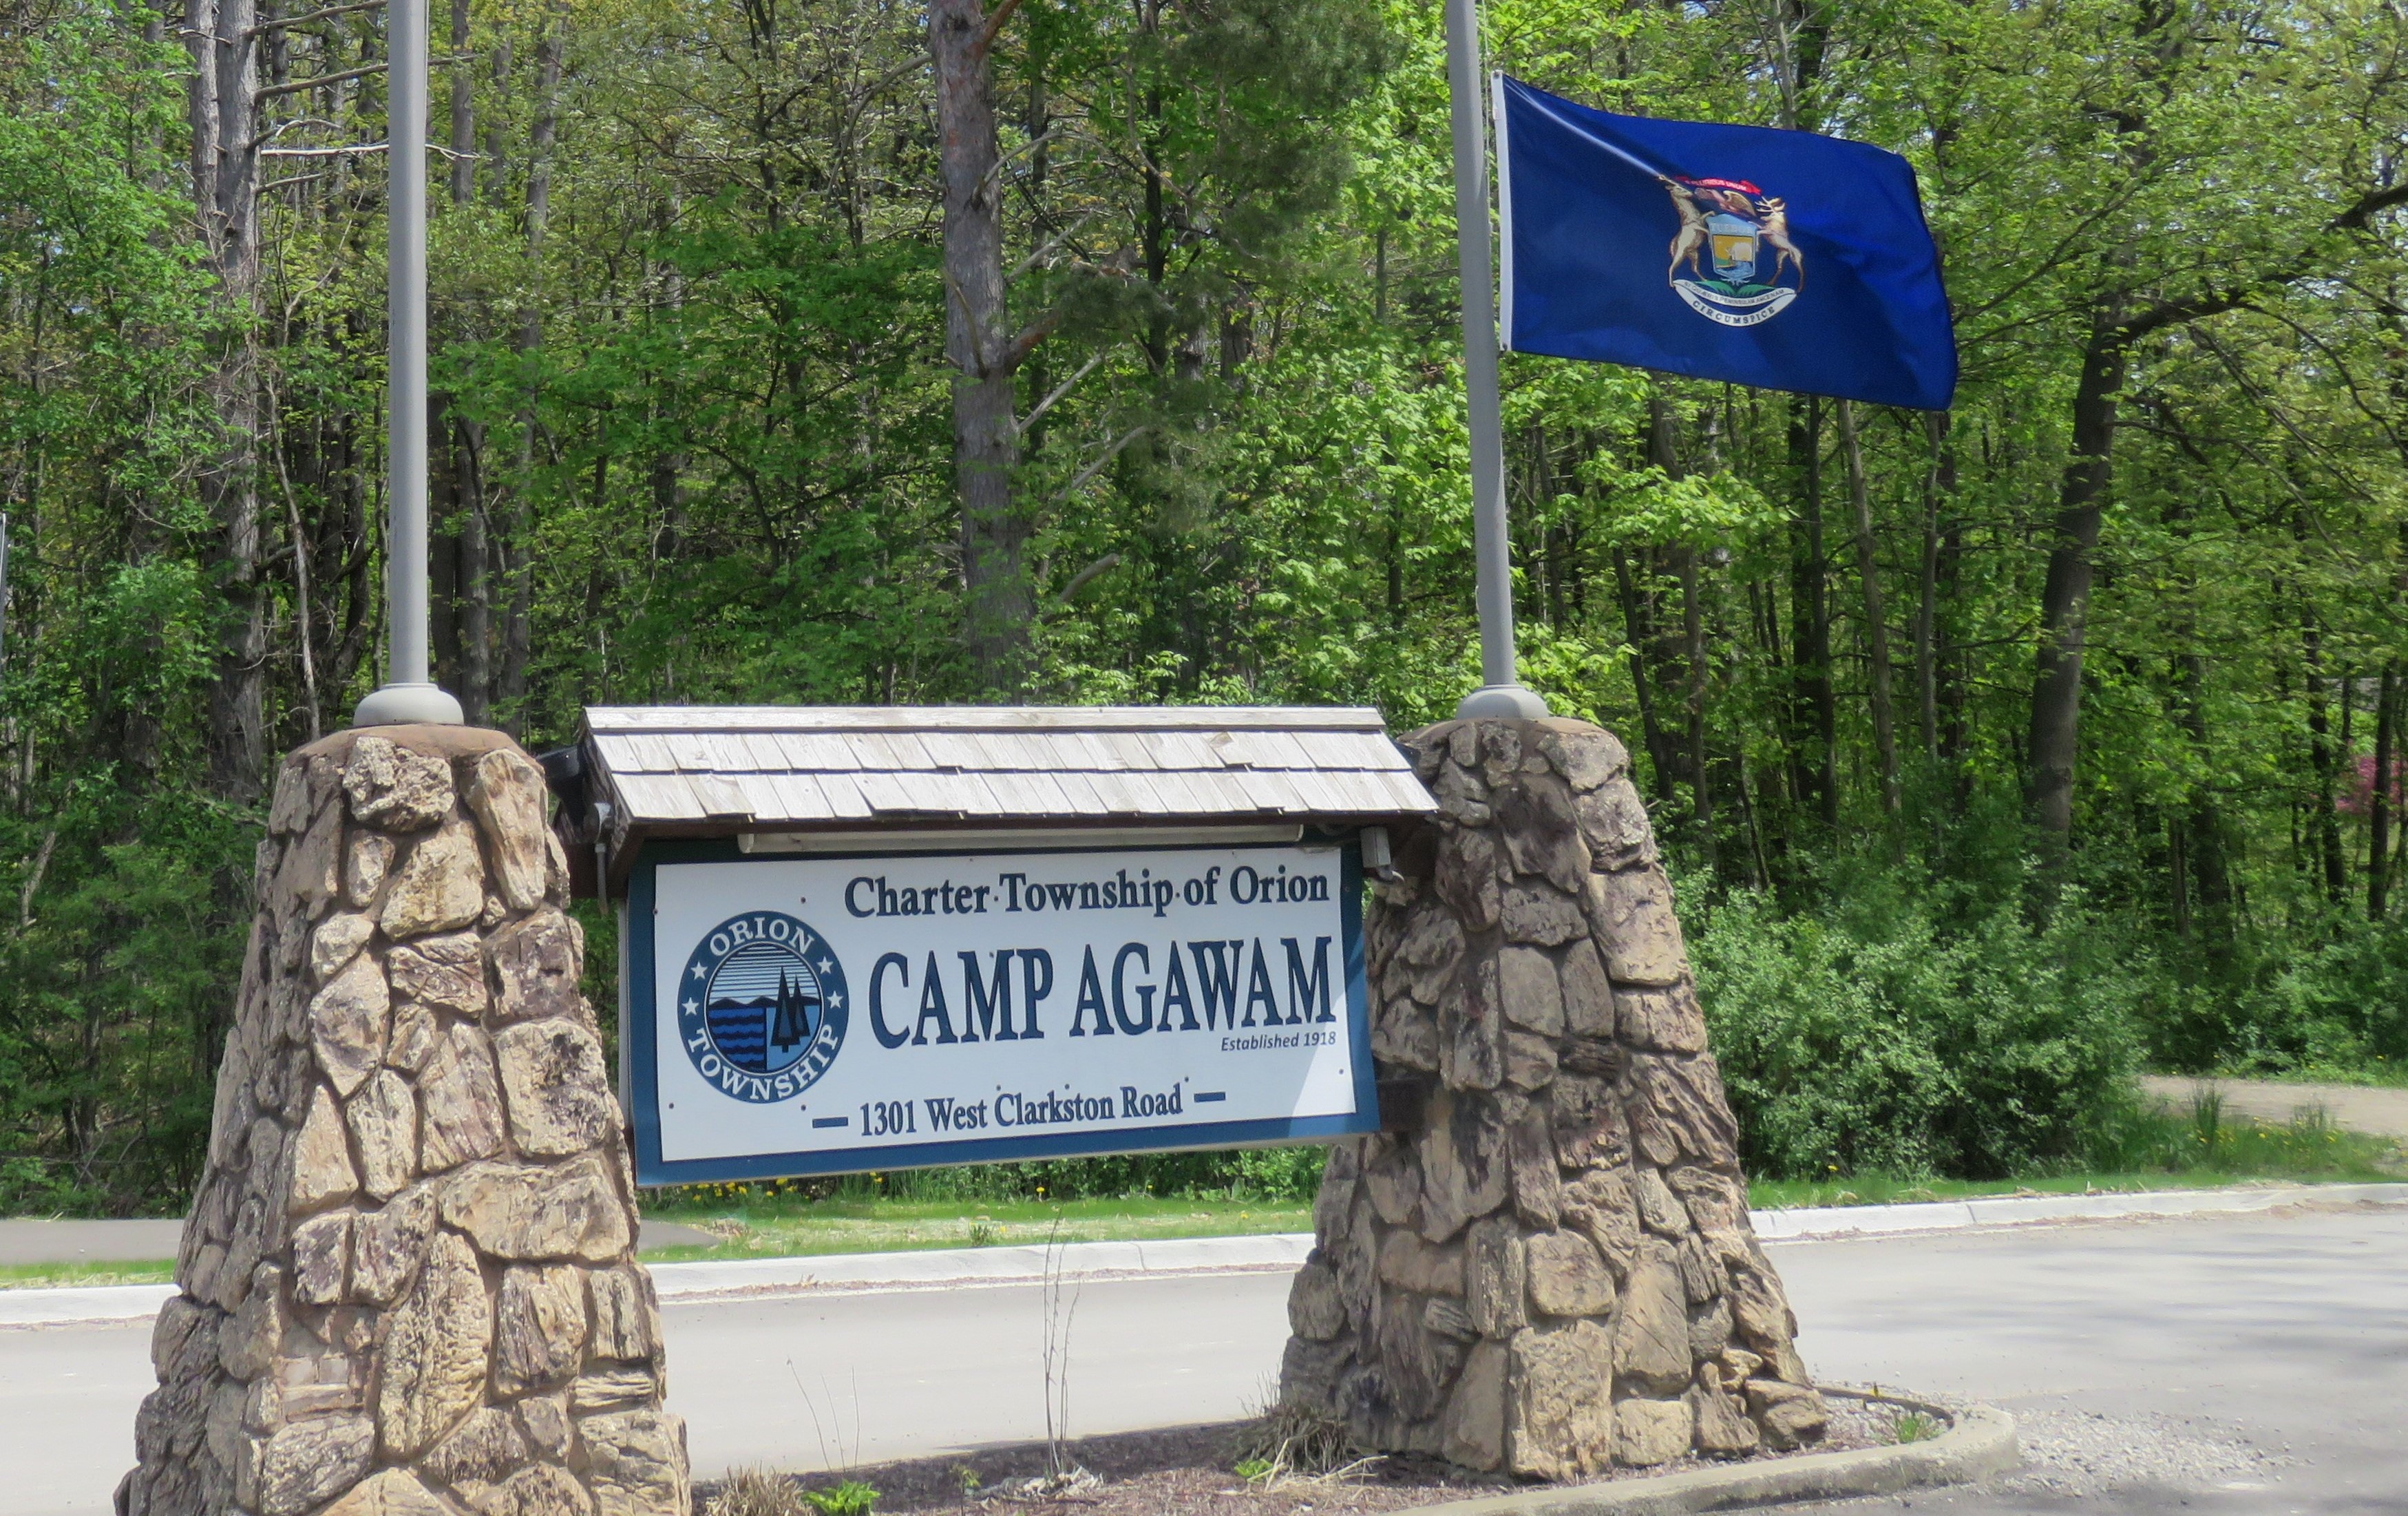 Camp Agawam